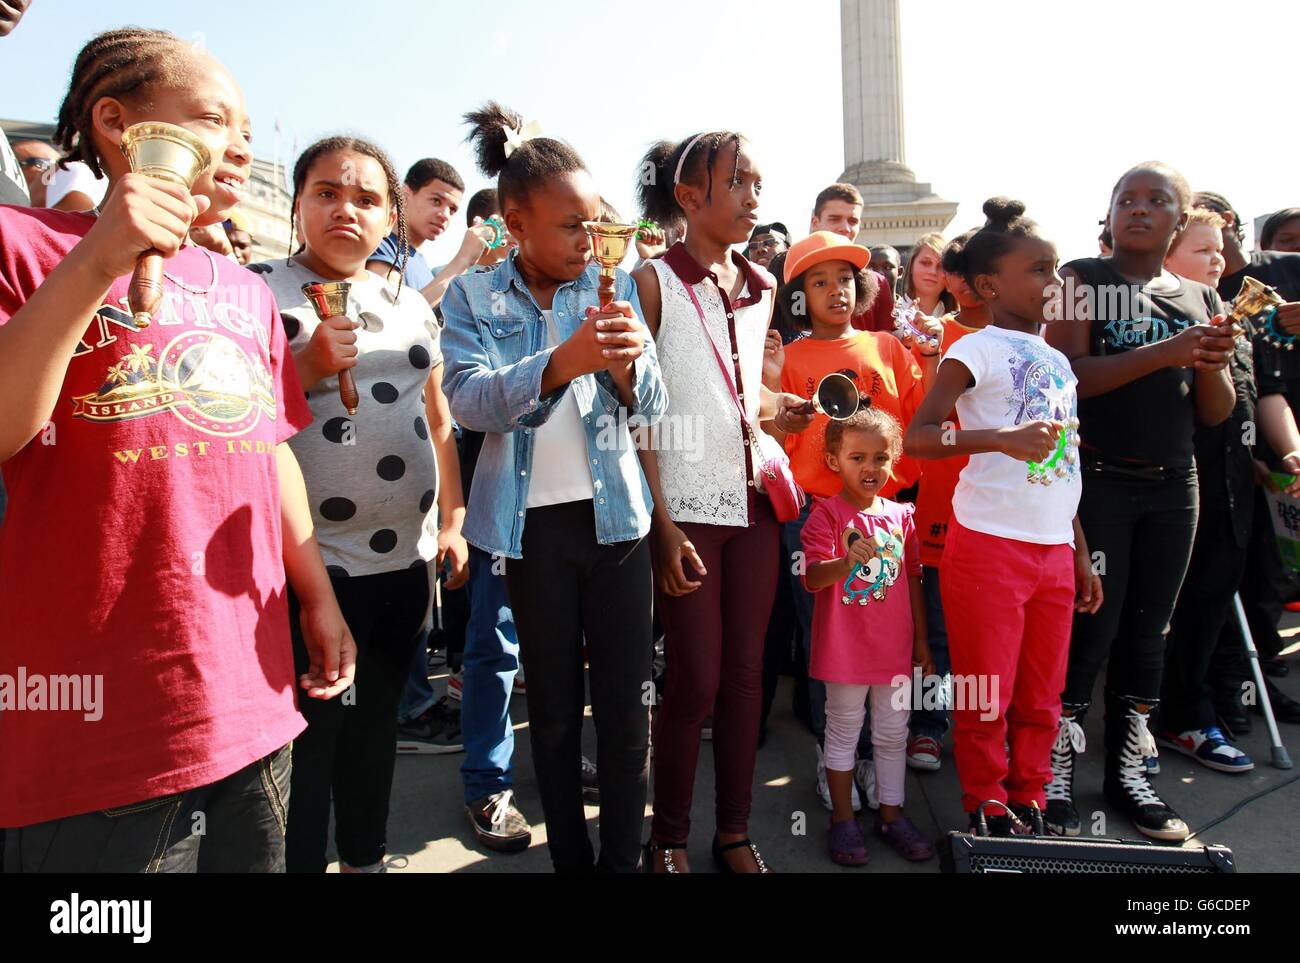 Fünfzig junge Glockenläger begehen den 50. Jahrestag der Rede von Martin Luther King "Ich habe einen Traum". Glocken läuteten um 15 Uhr - die Stunde, in der Dr. King seine berühmte Rede hielt - vor ähnlichen gedenkfeiern in Washington. Stockfoto